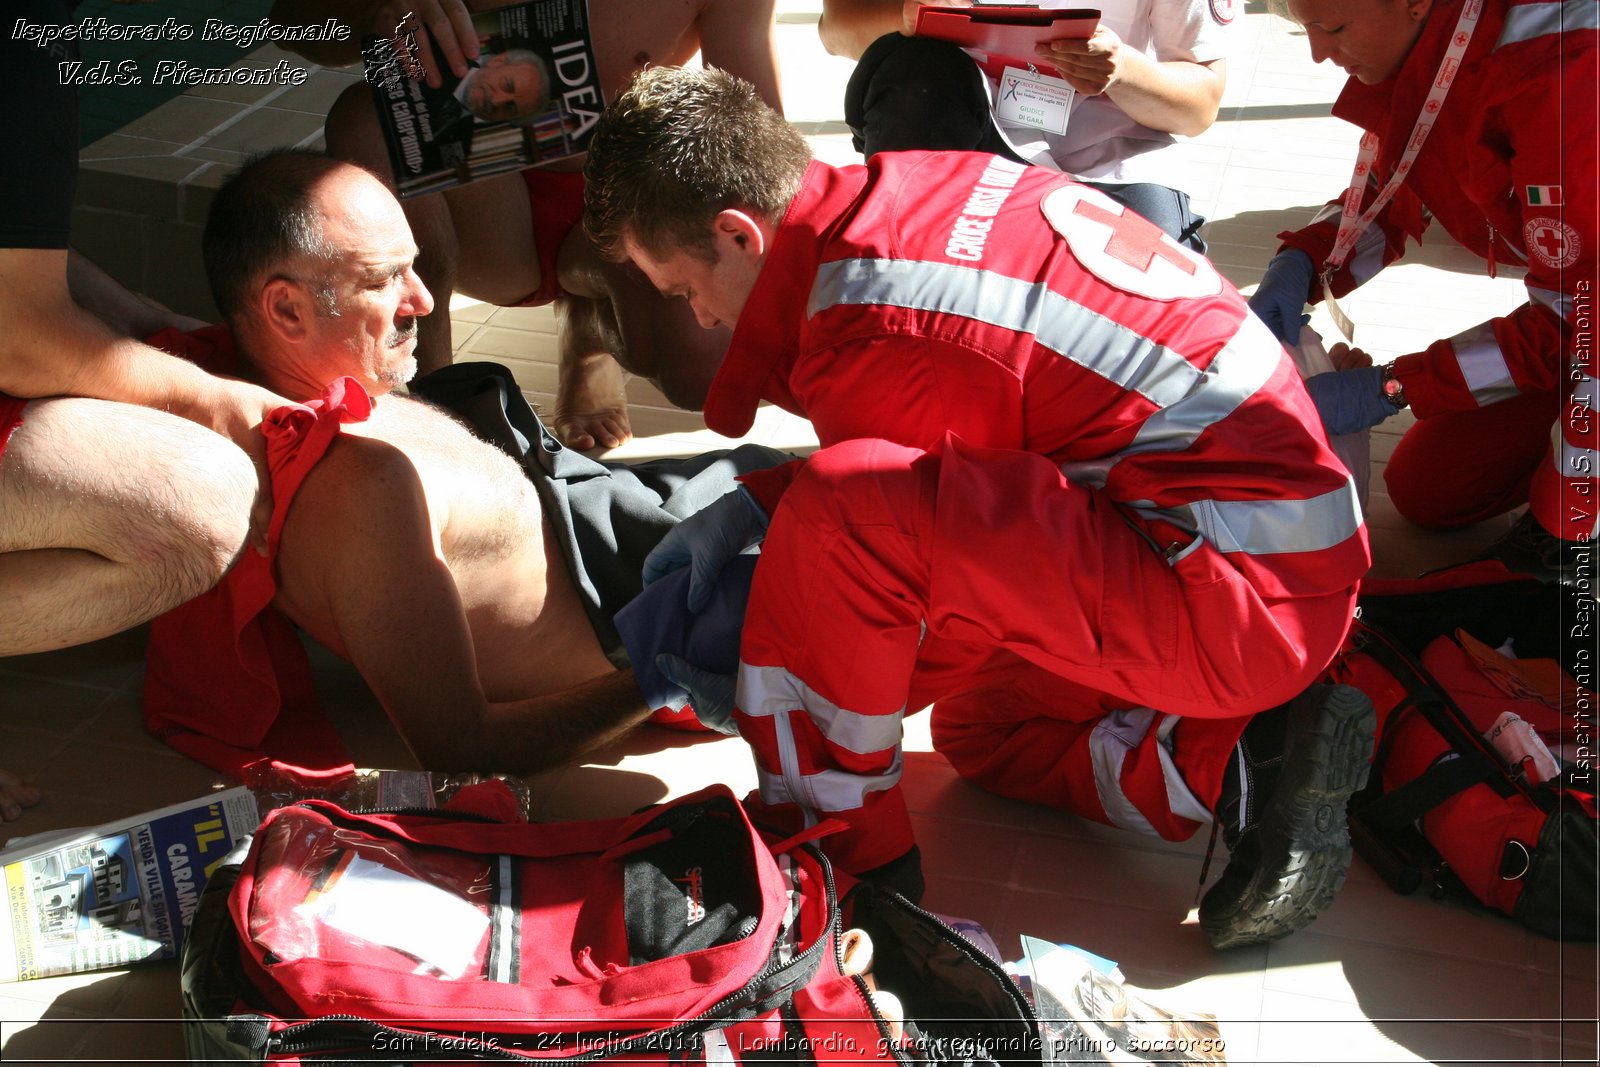 San Fedele - 24 luglio 2011 - Lombardia, gara regionale primo soccorso -  Croce Rossa Italiana - Ispettorato Regionale Volontari del Soccorso Piemonte